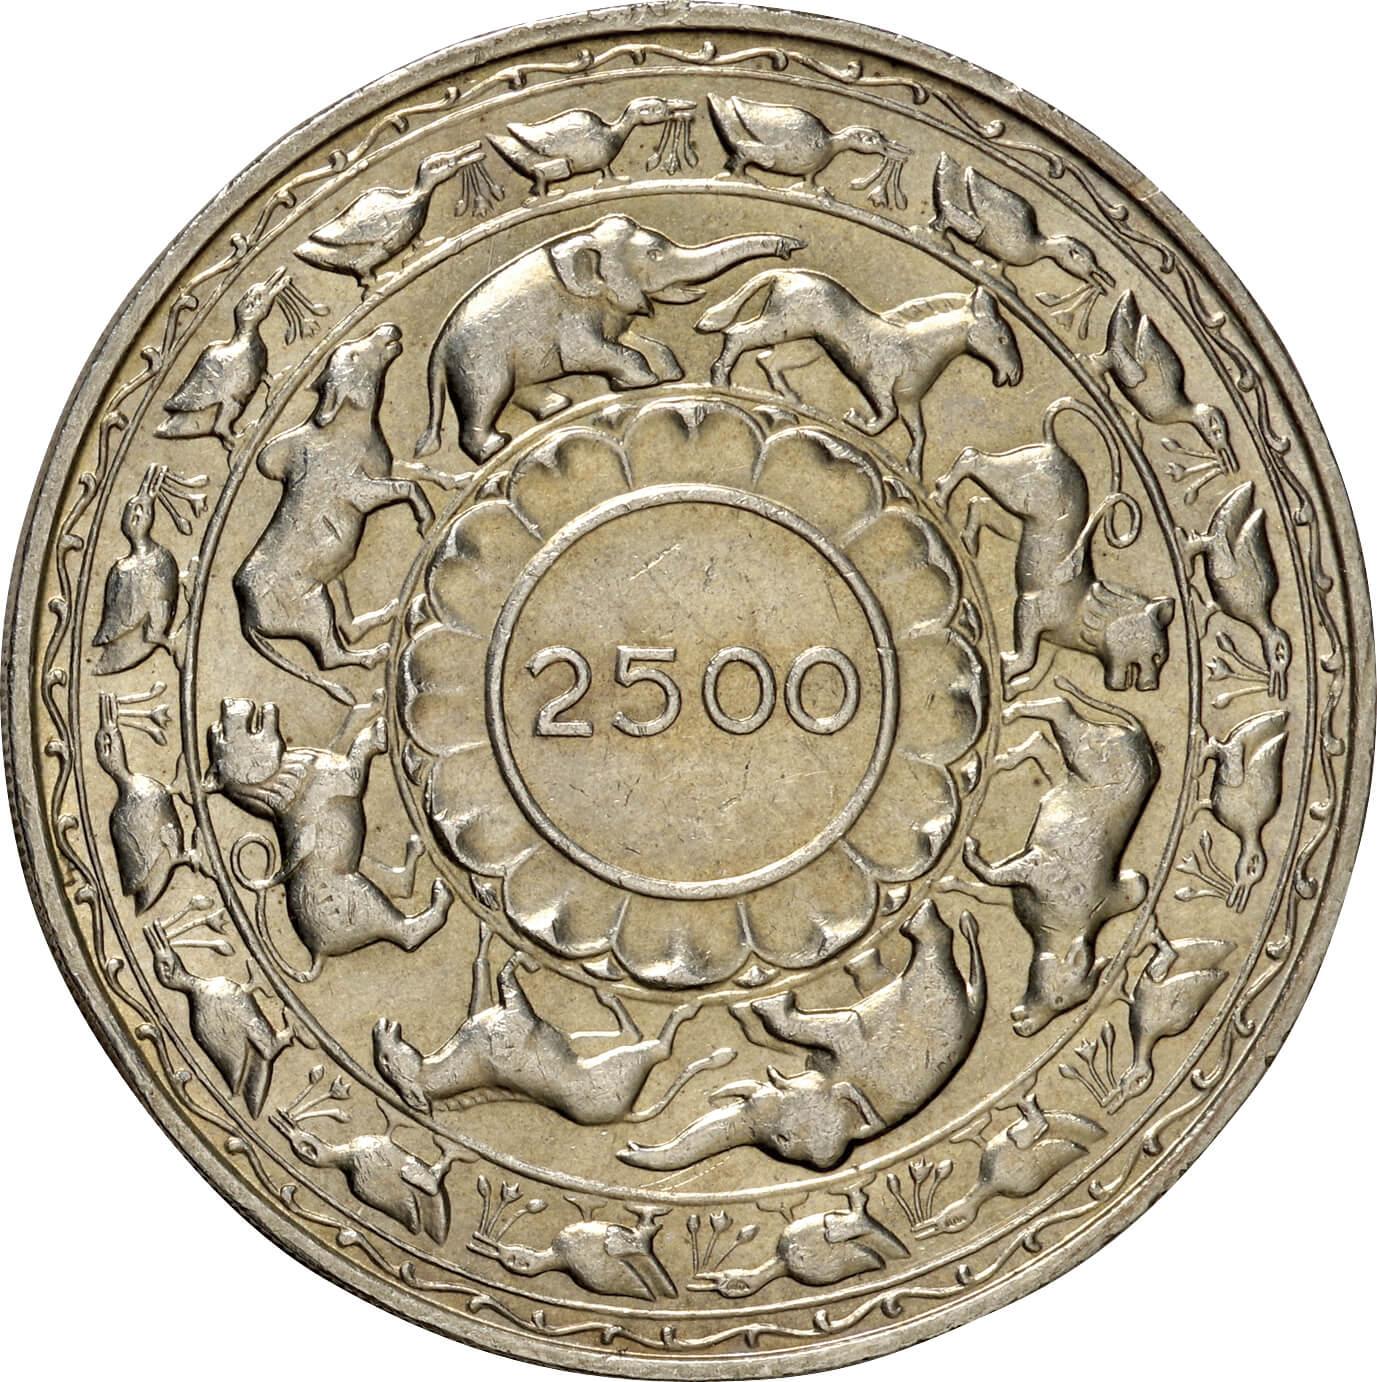 セイロン-Ceylon. 1957. 極美. EF. Silver. 5ルピー(Rupee). 仏教2500 